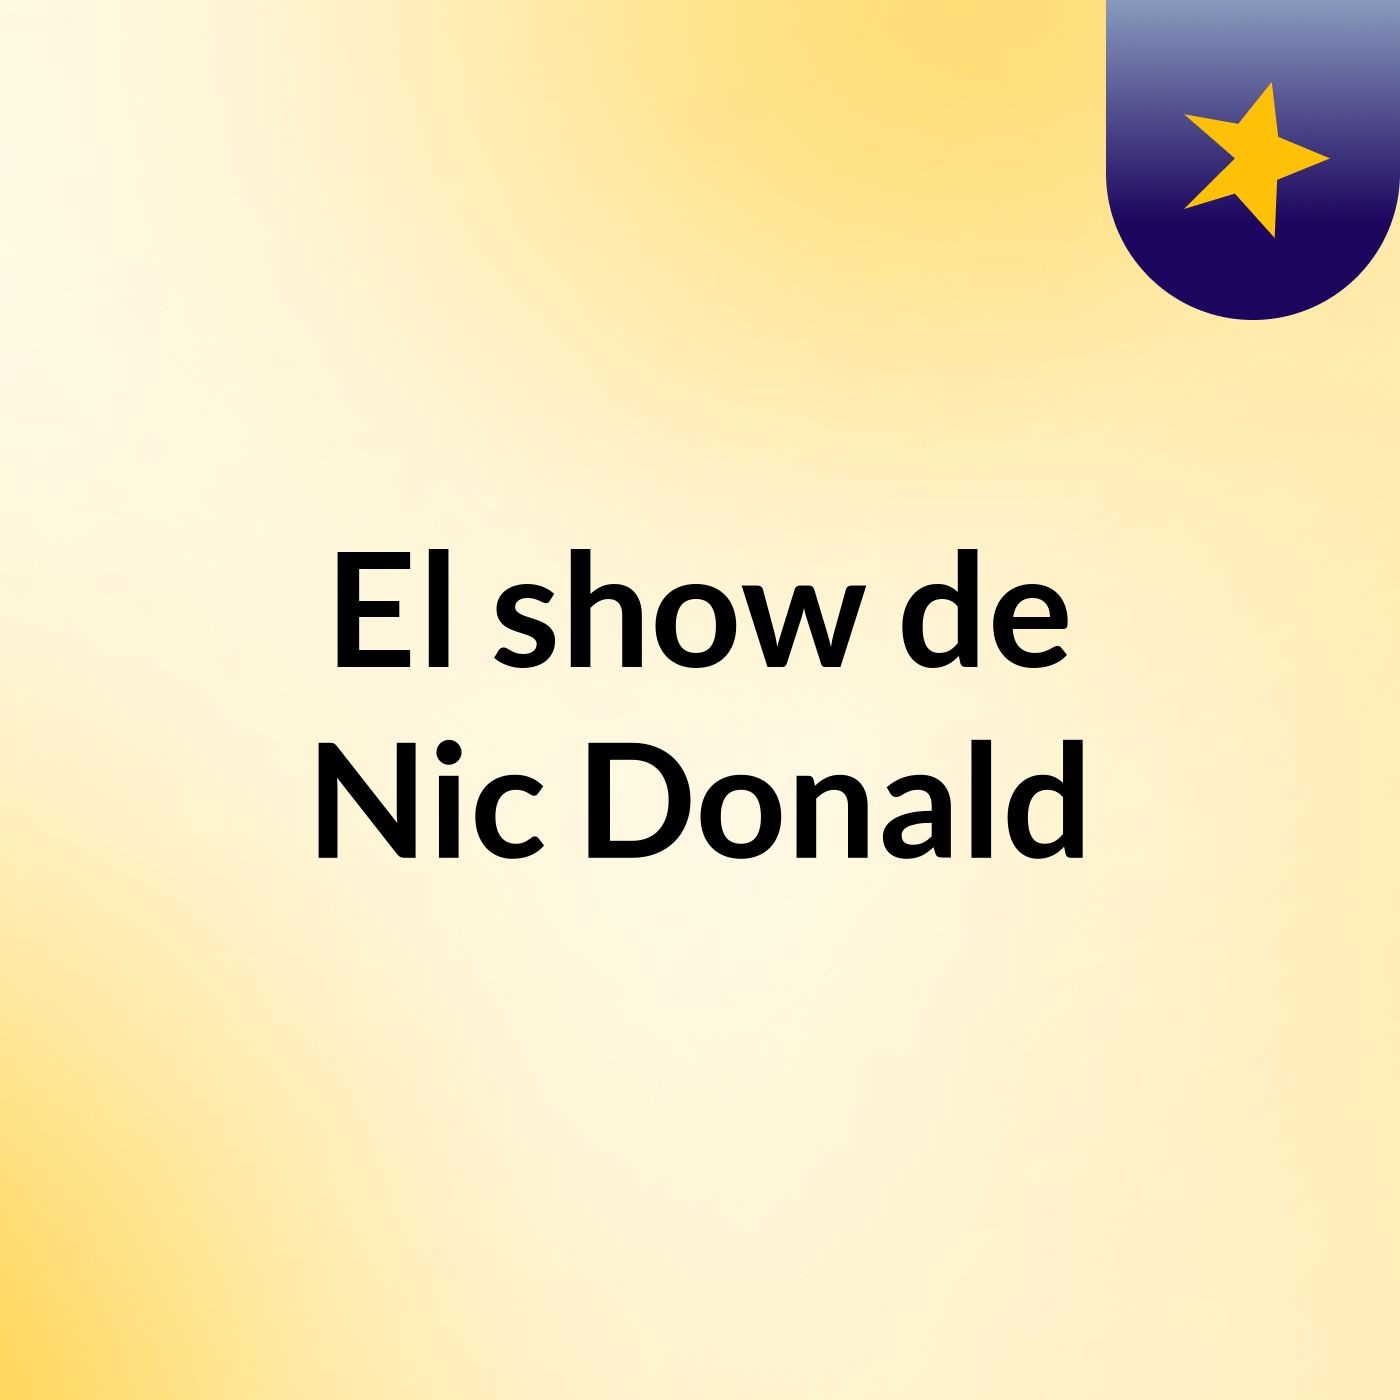 El show de Nic Donald